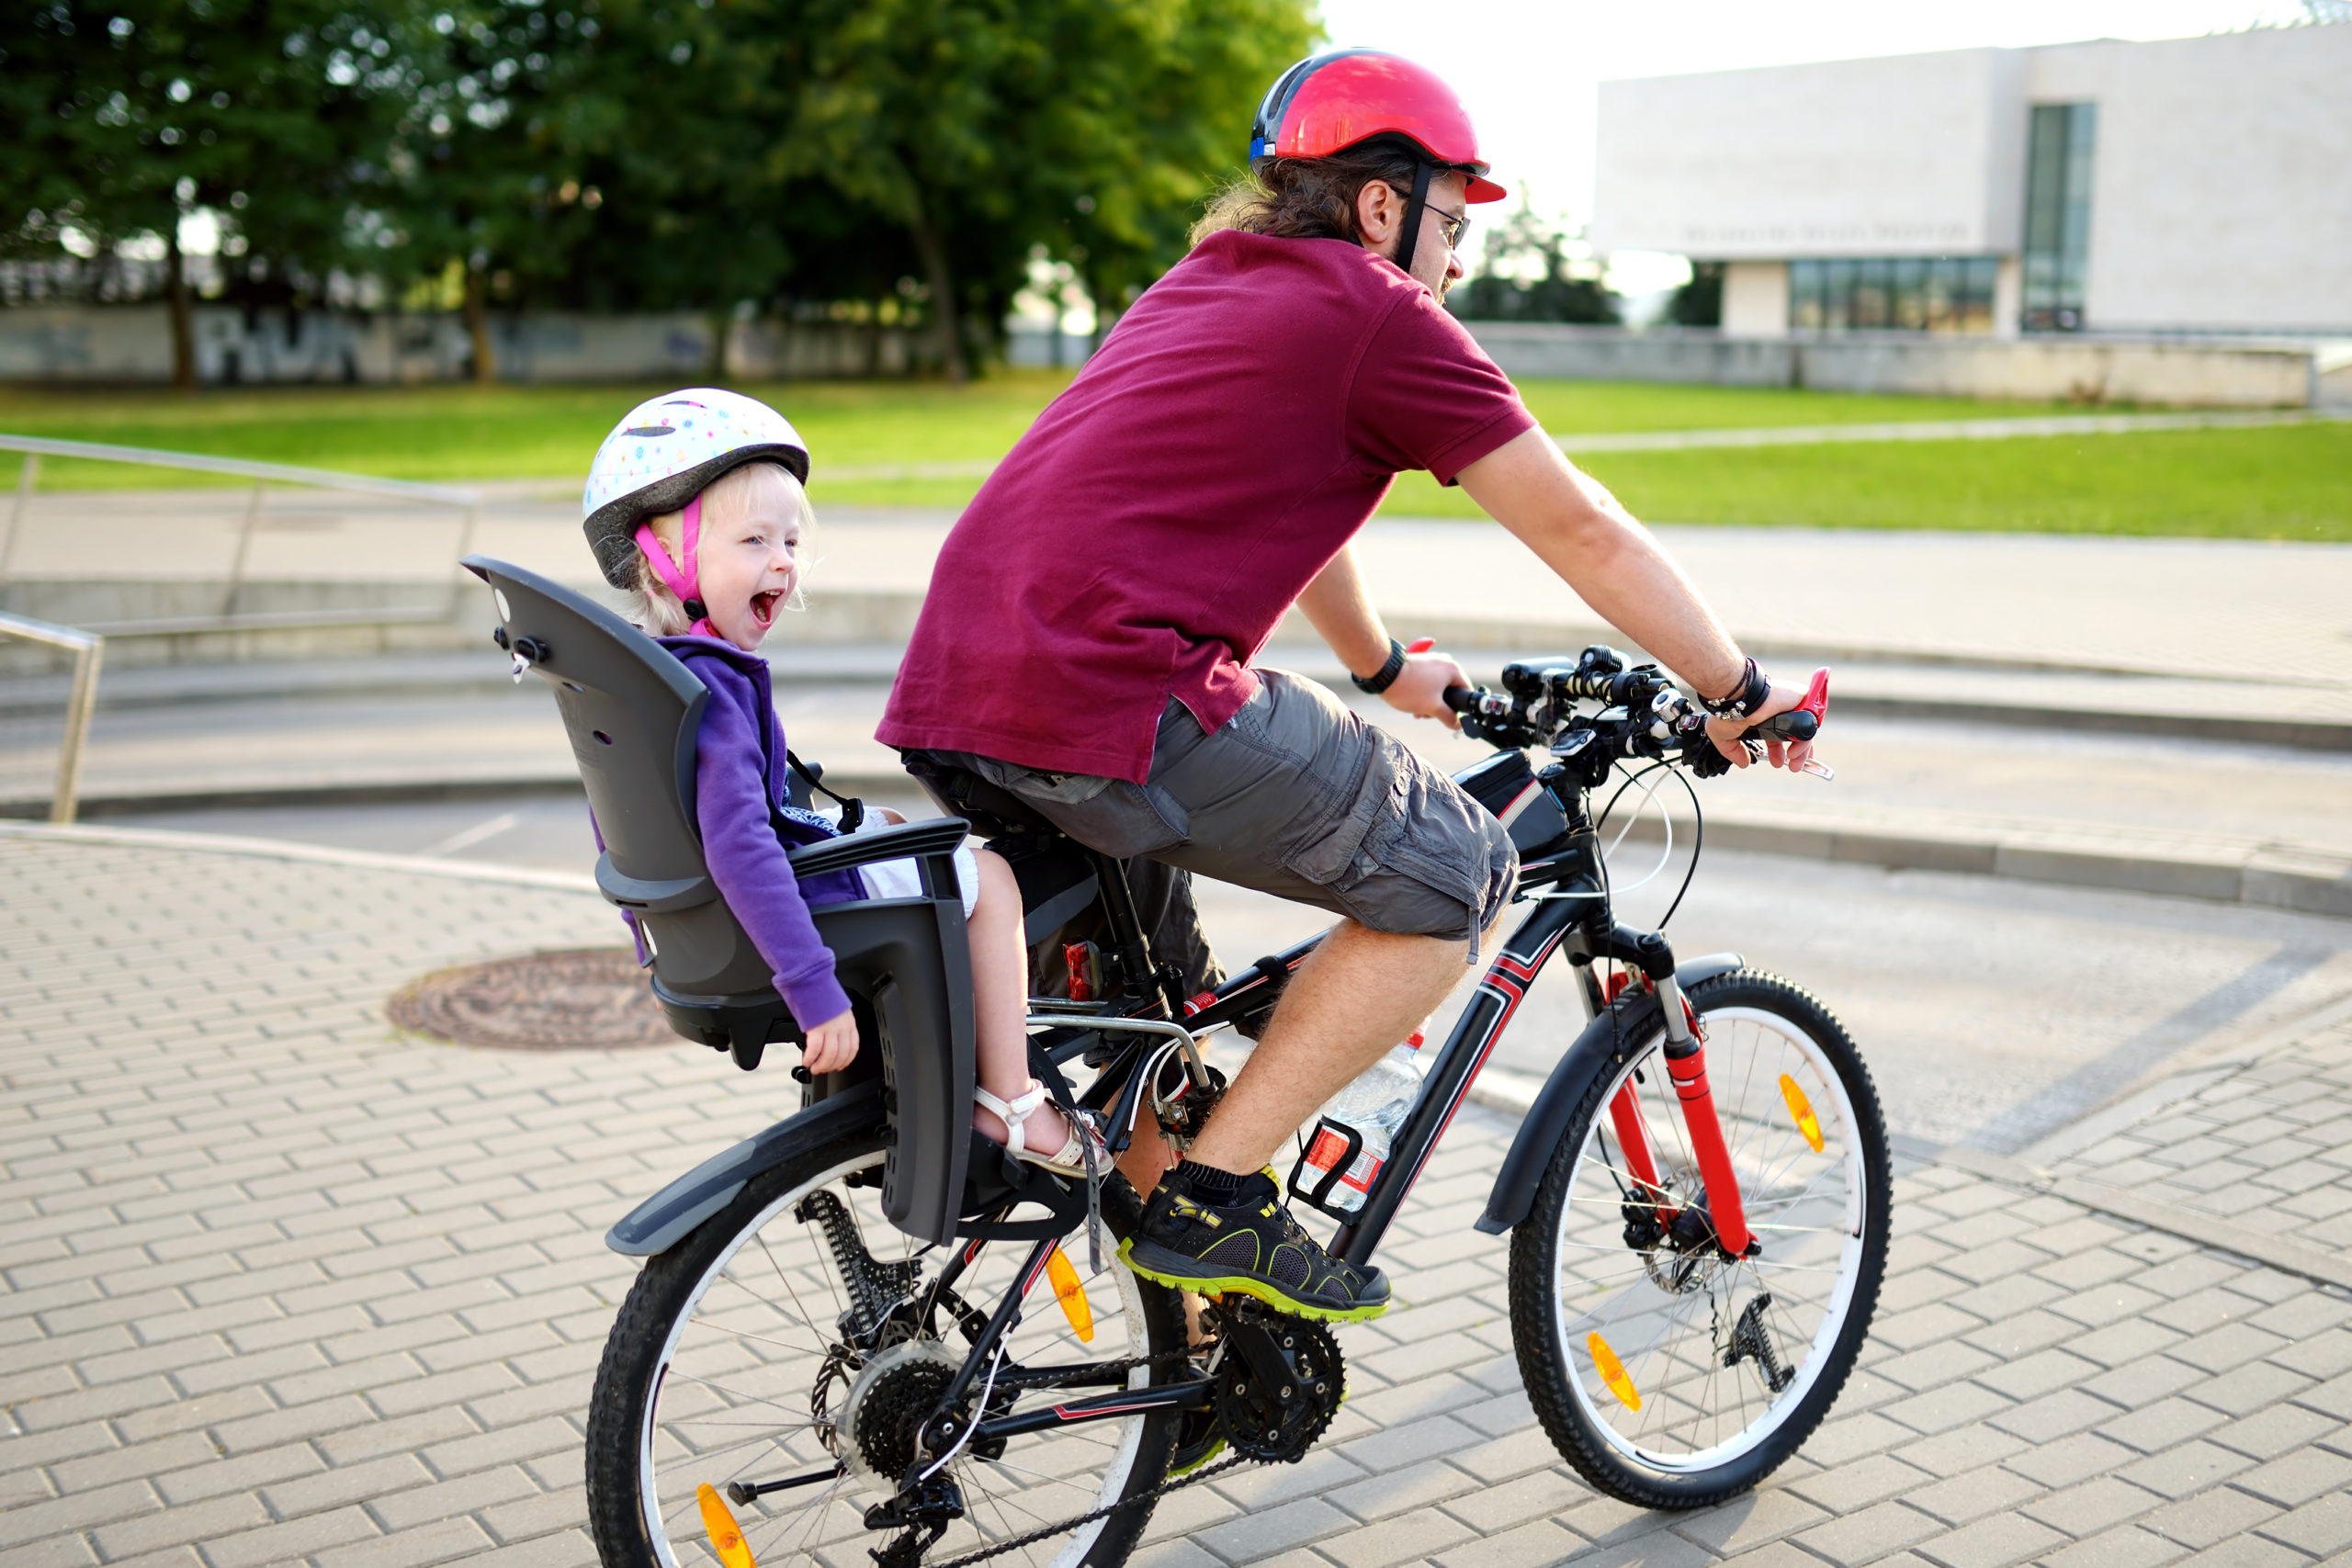 Warentest fährt Rad: Jeder vierte Kinder-Fahrradsitz fällt durch 